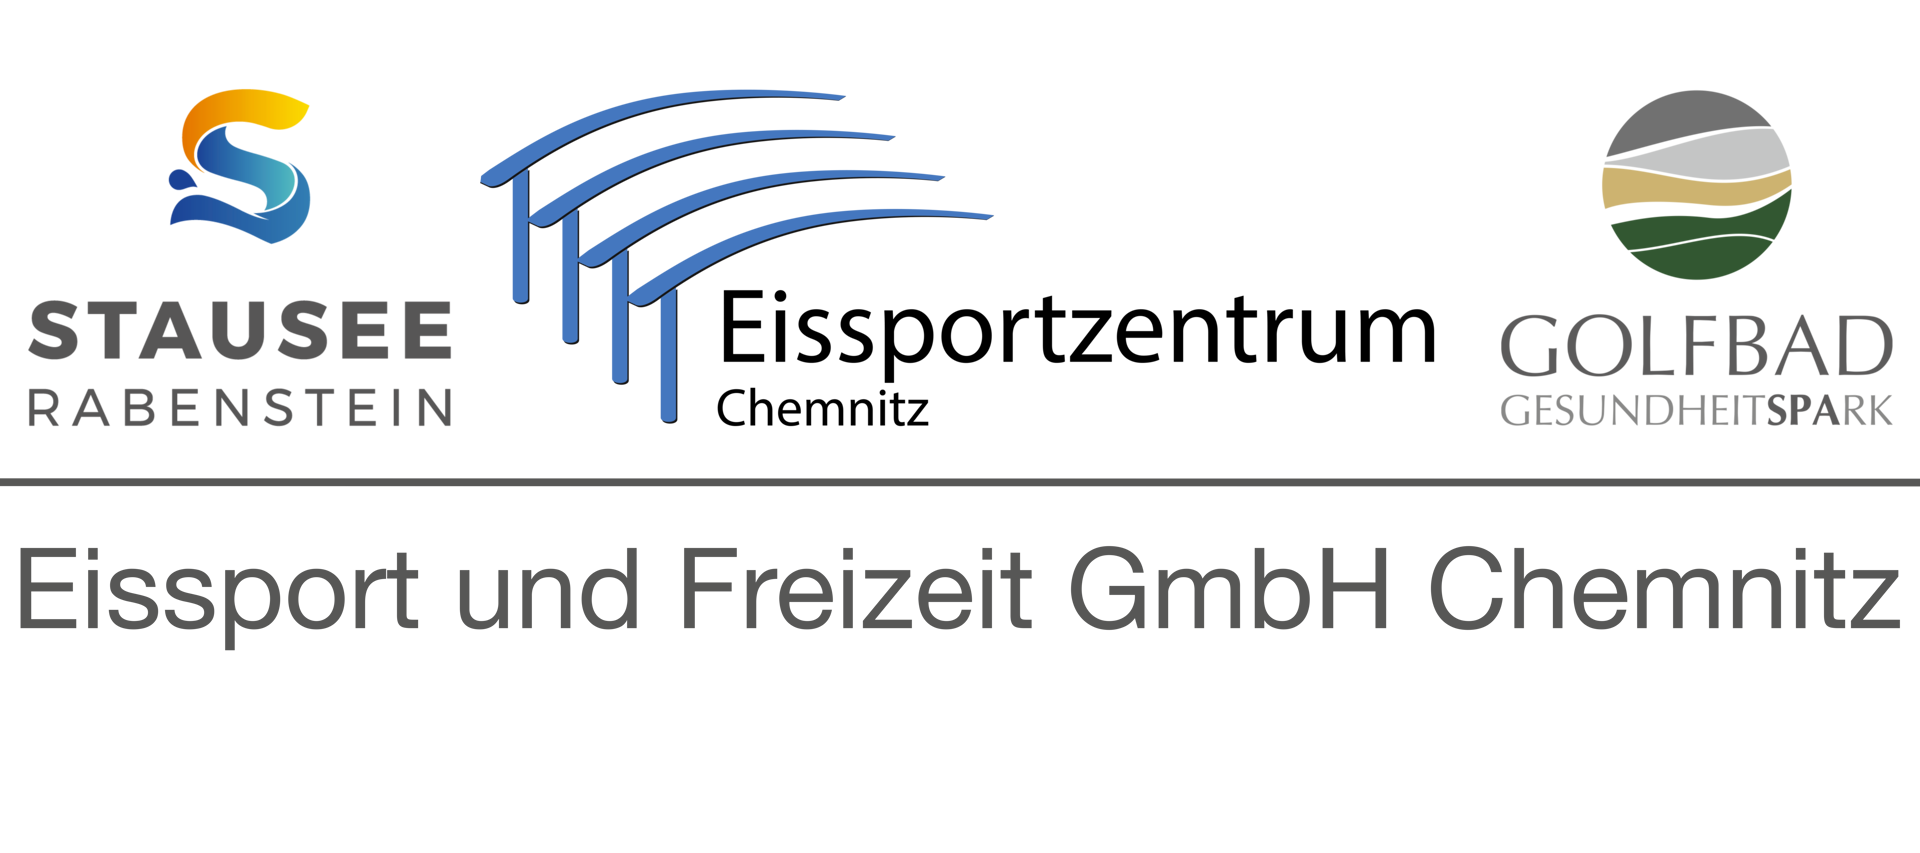 Eissport und Freizeit GmbH Chemnitz